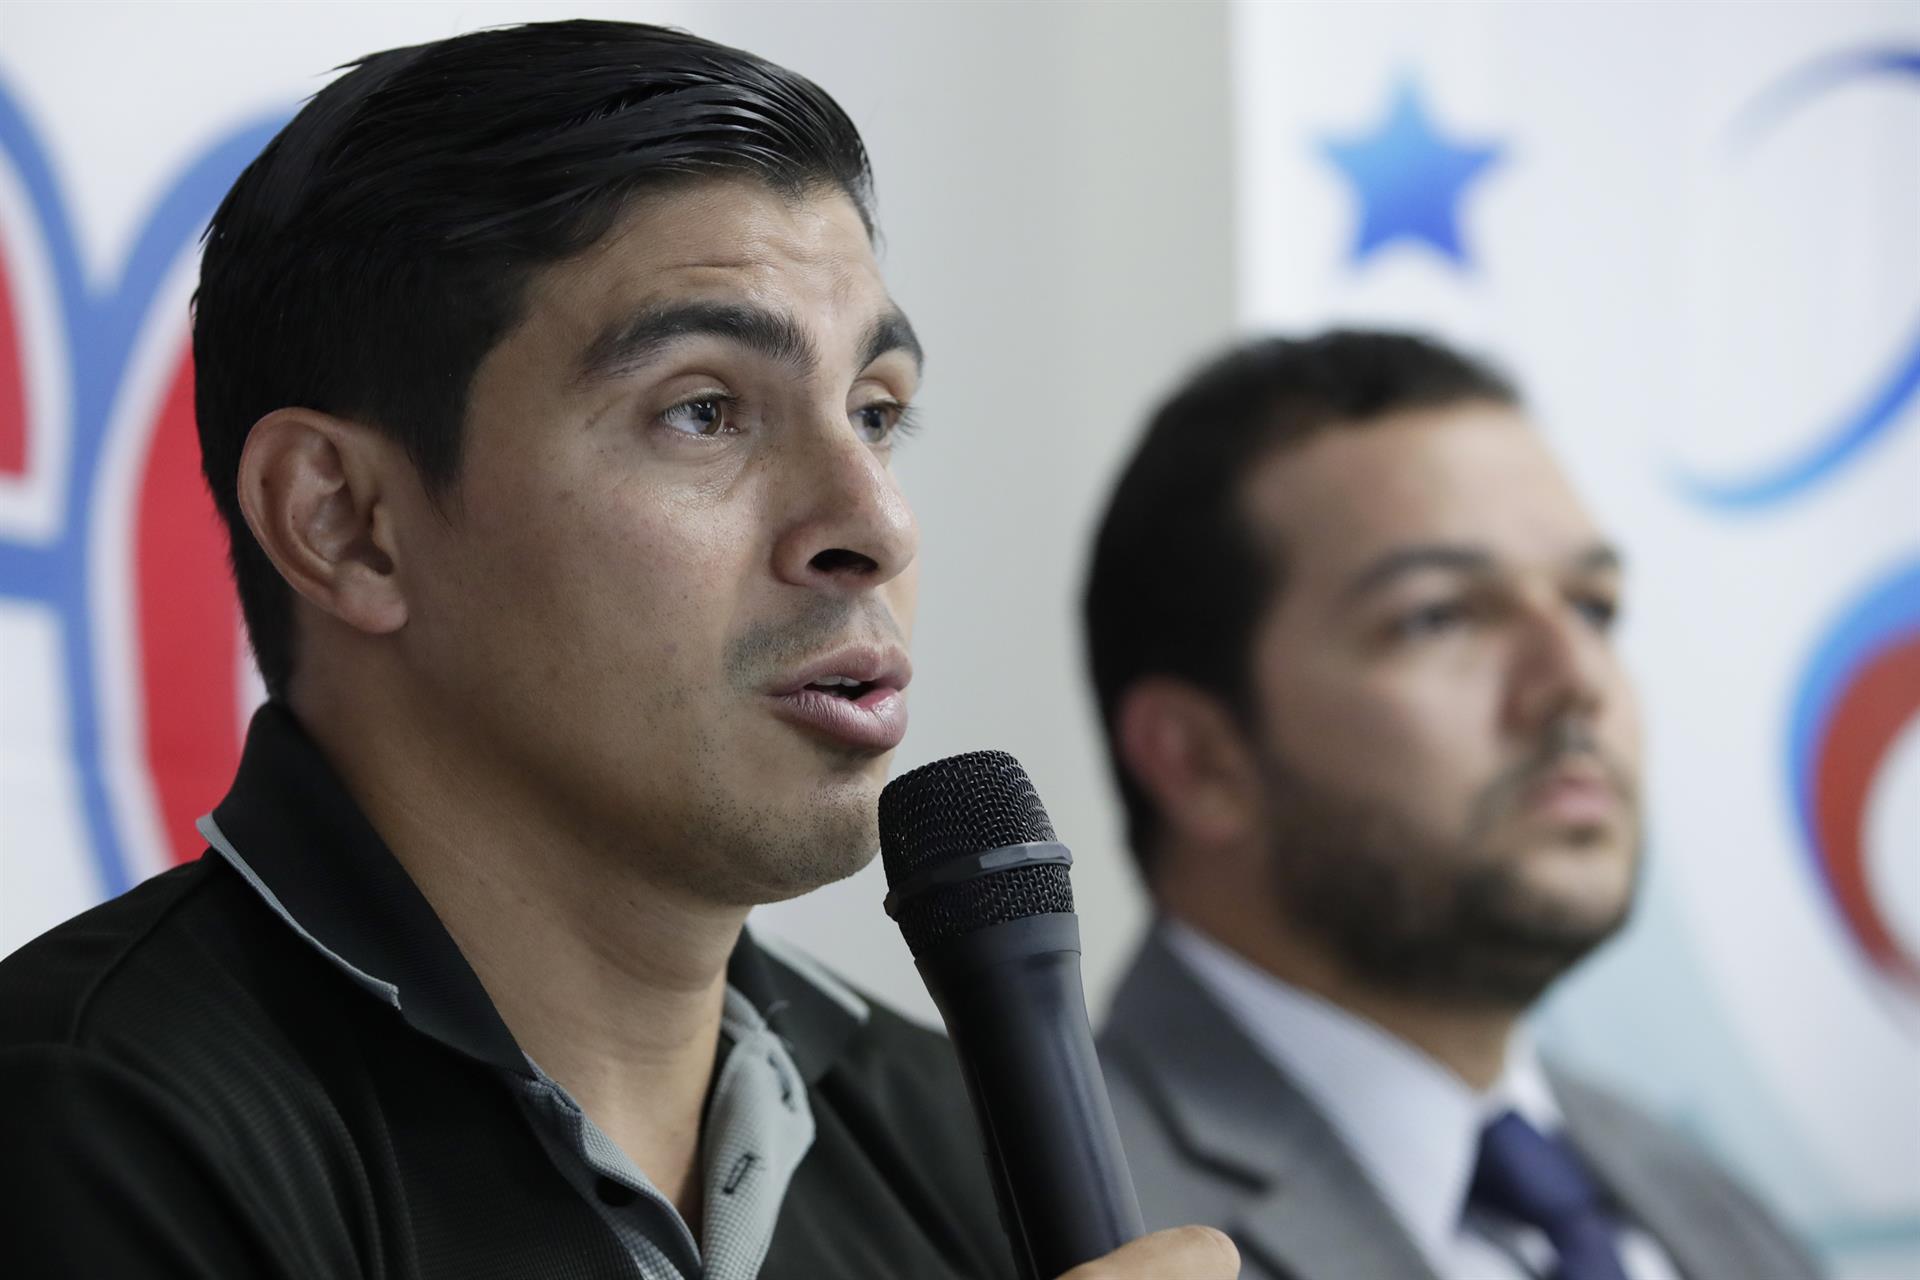 Asociación de futbolistas en Panamá prometen una huelga si no se reconocen sus derechos laborales